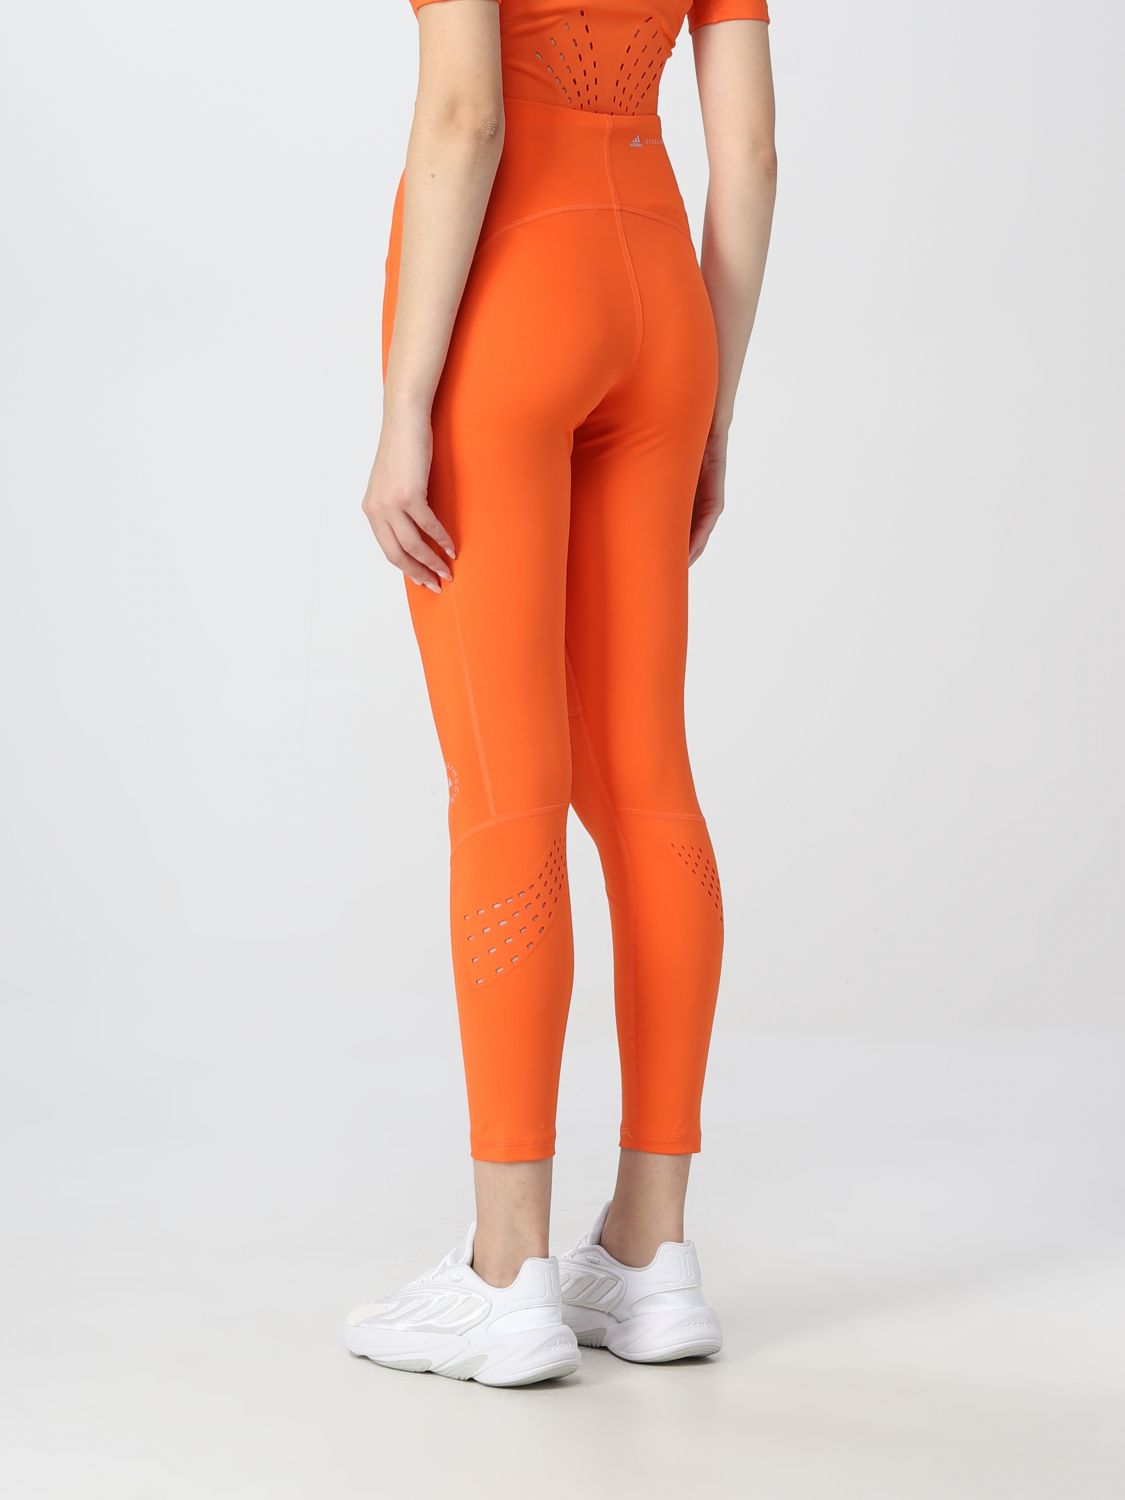 Hose Adidas By Stella Mccartney: Adidas By Stella Mccartney Damen Hose orange 3